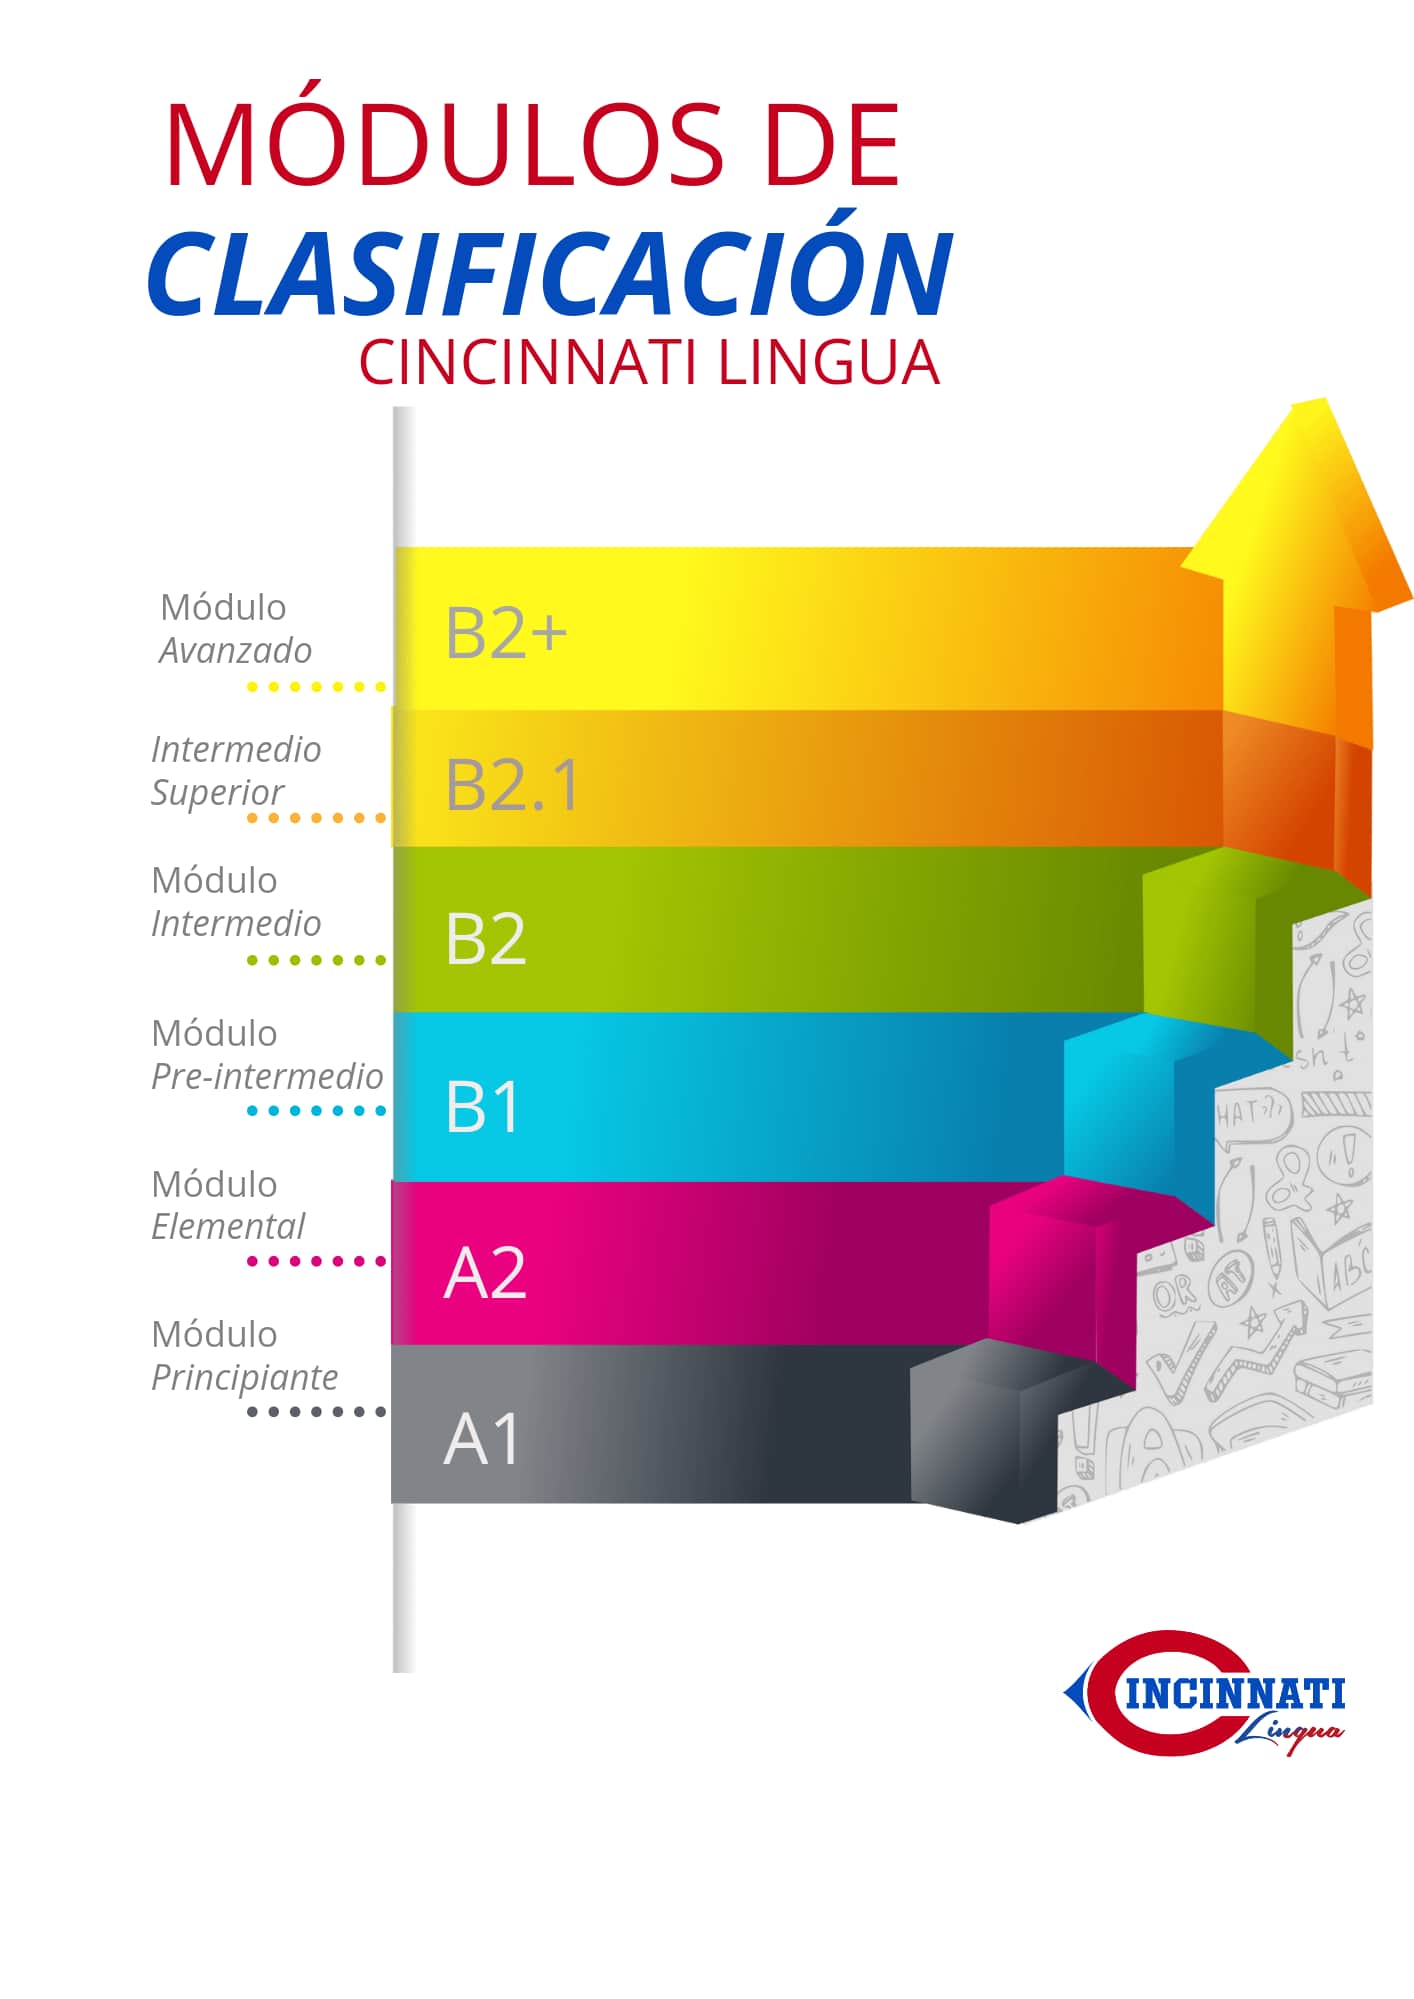 Módulos de clasificación de idioma Ingles del centro de idiomas Cincinnati Lingua